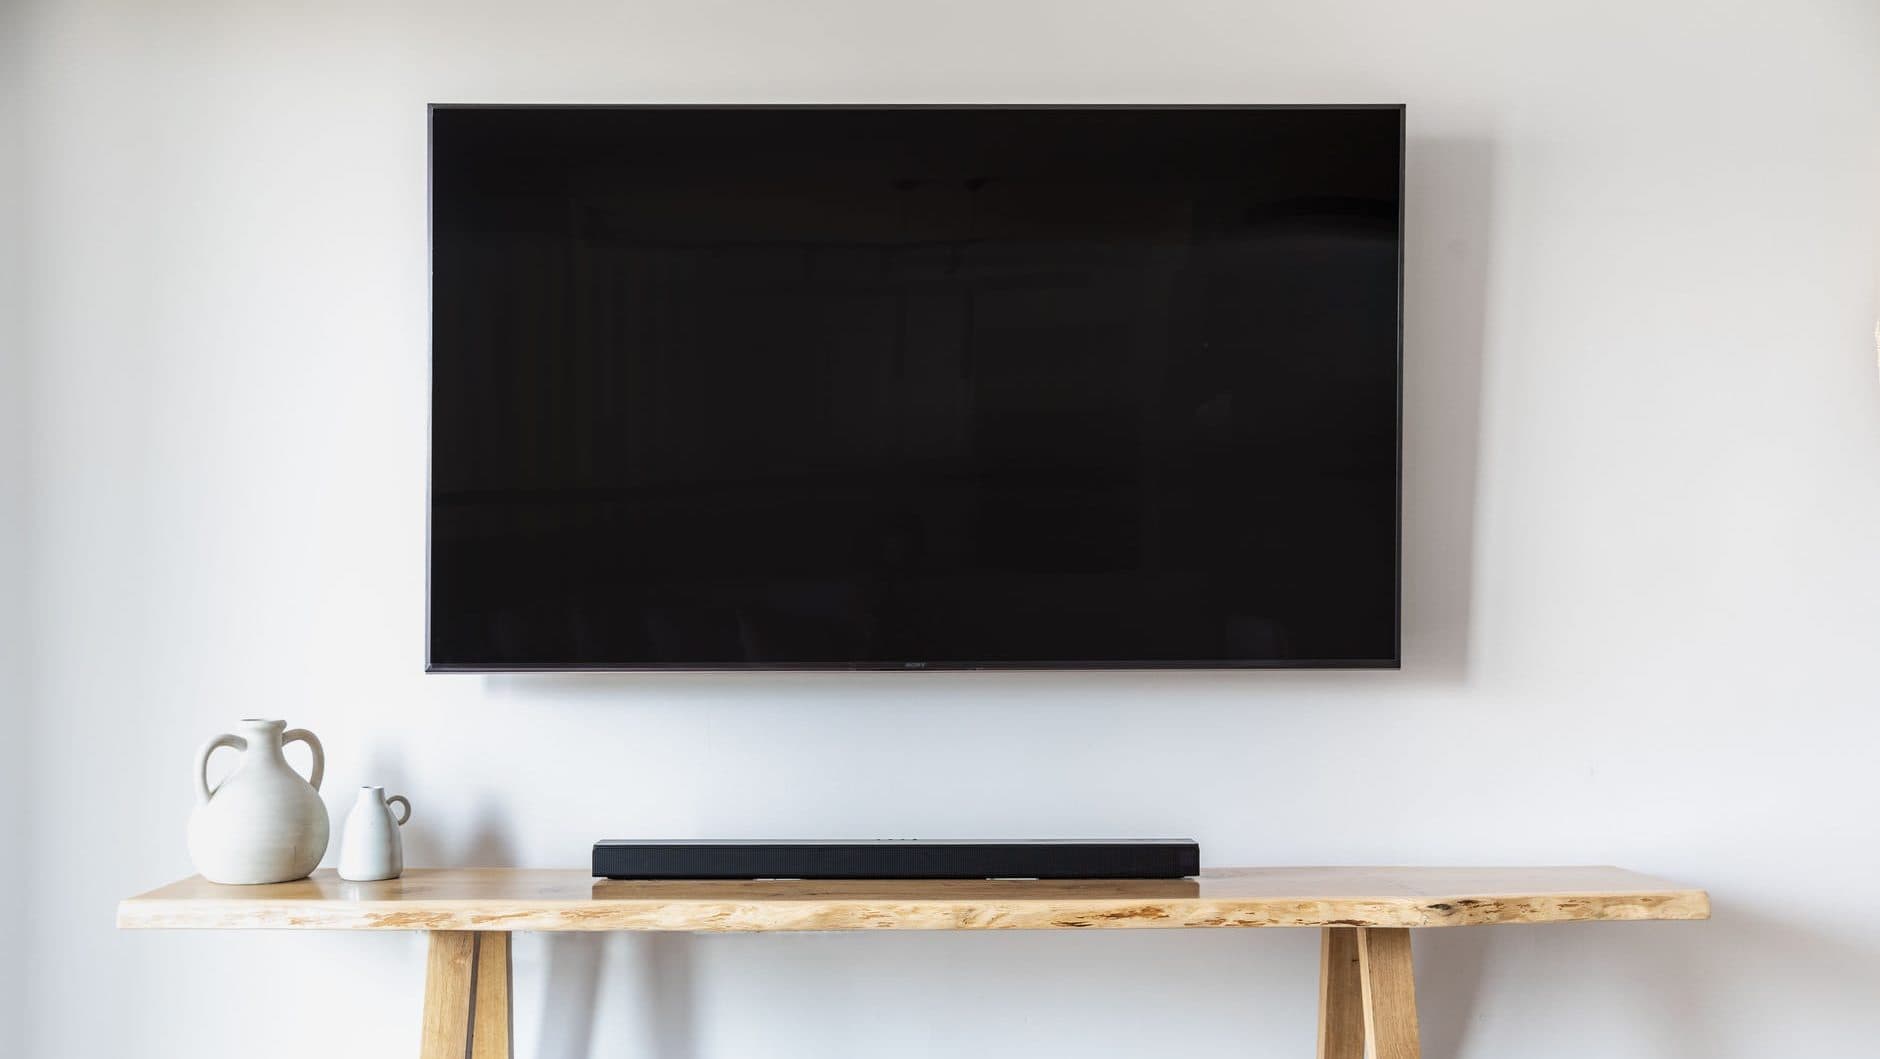 Soundbar op houten tafel onder een televisie in beeld